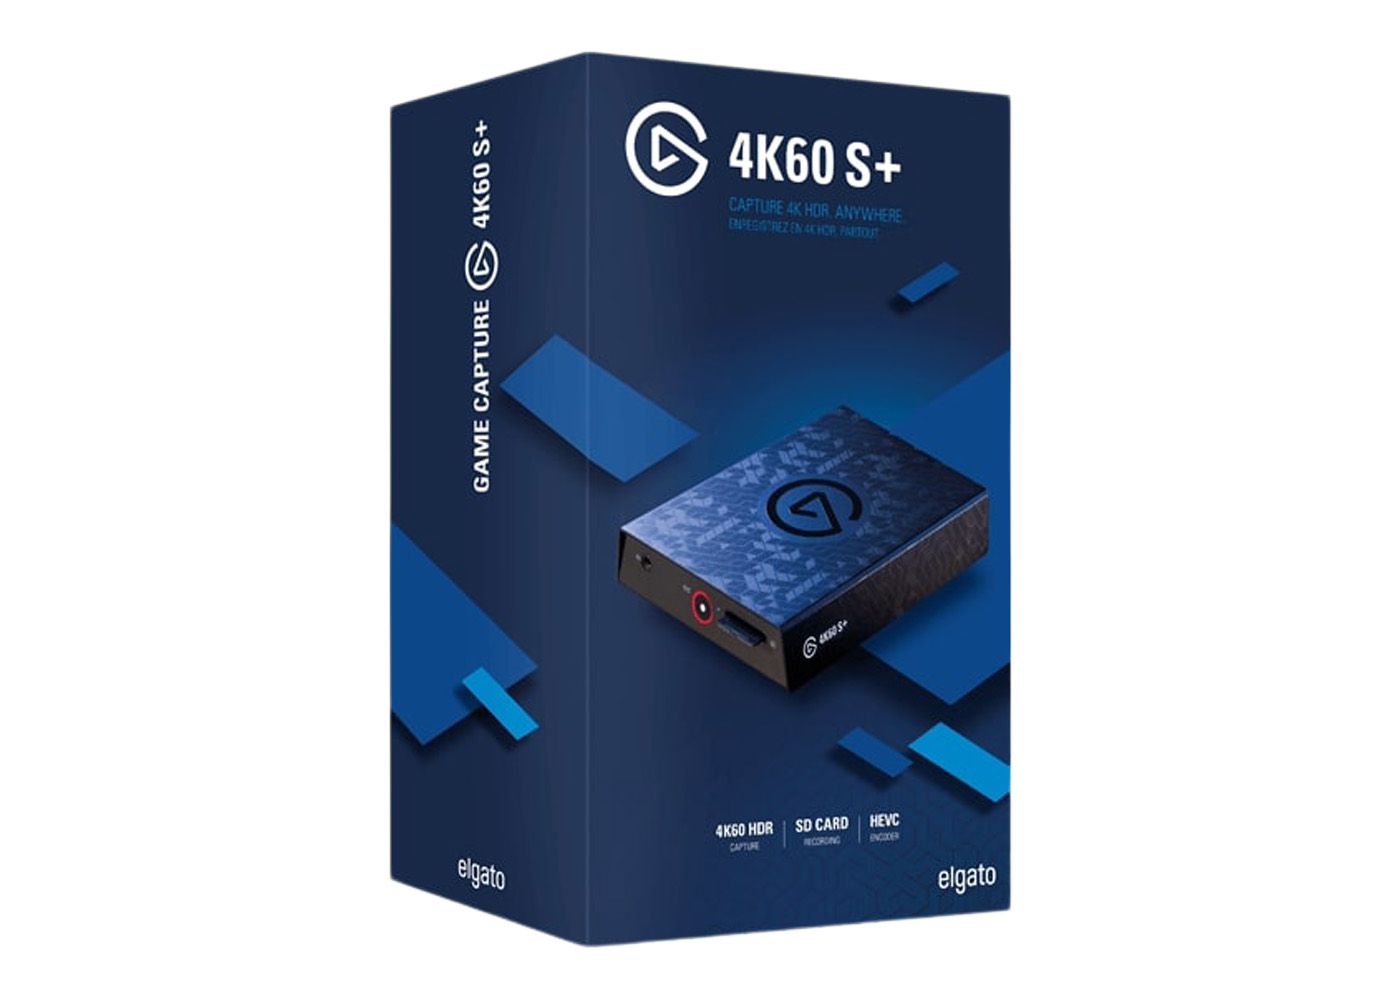 PS5PS4XboxSeGame Capture 4K60 S+